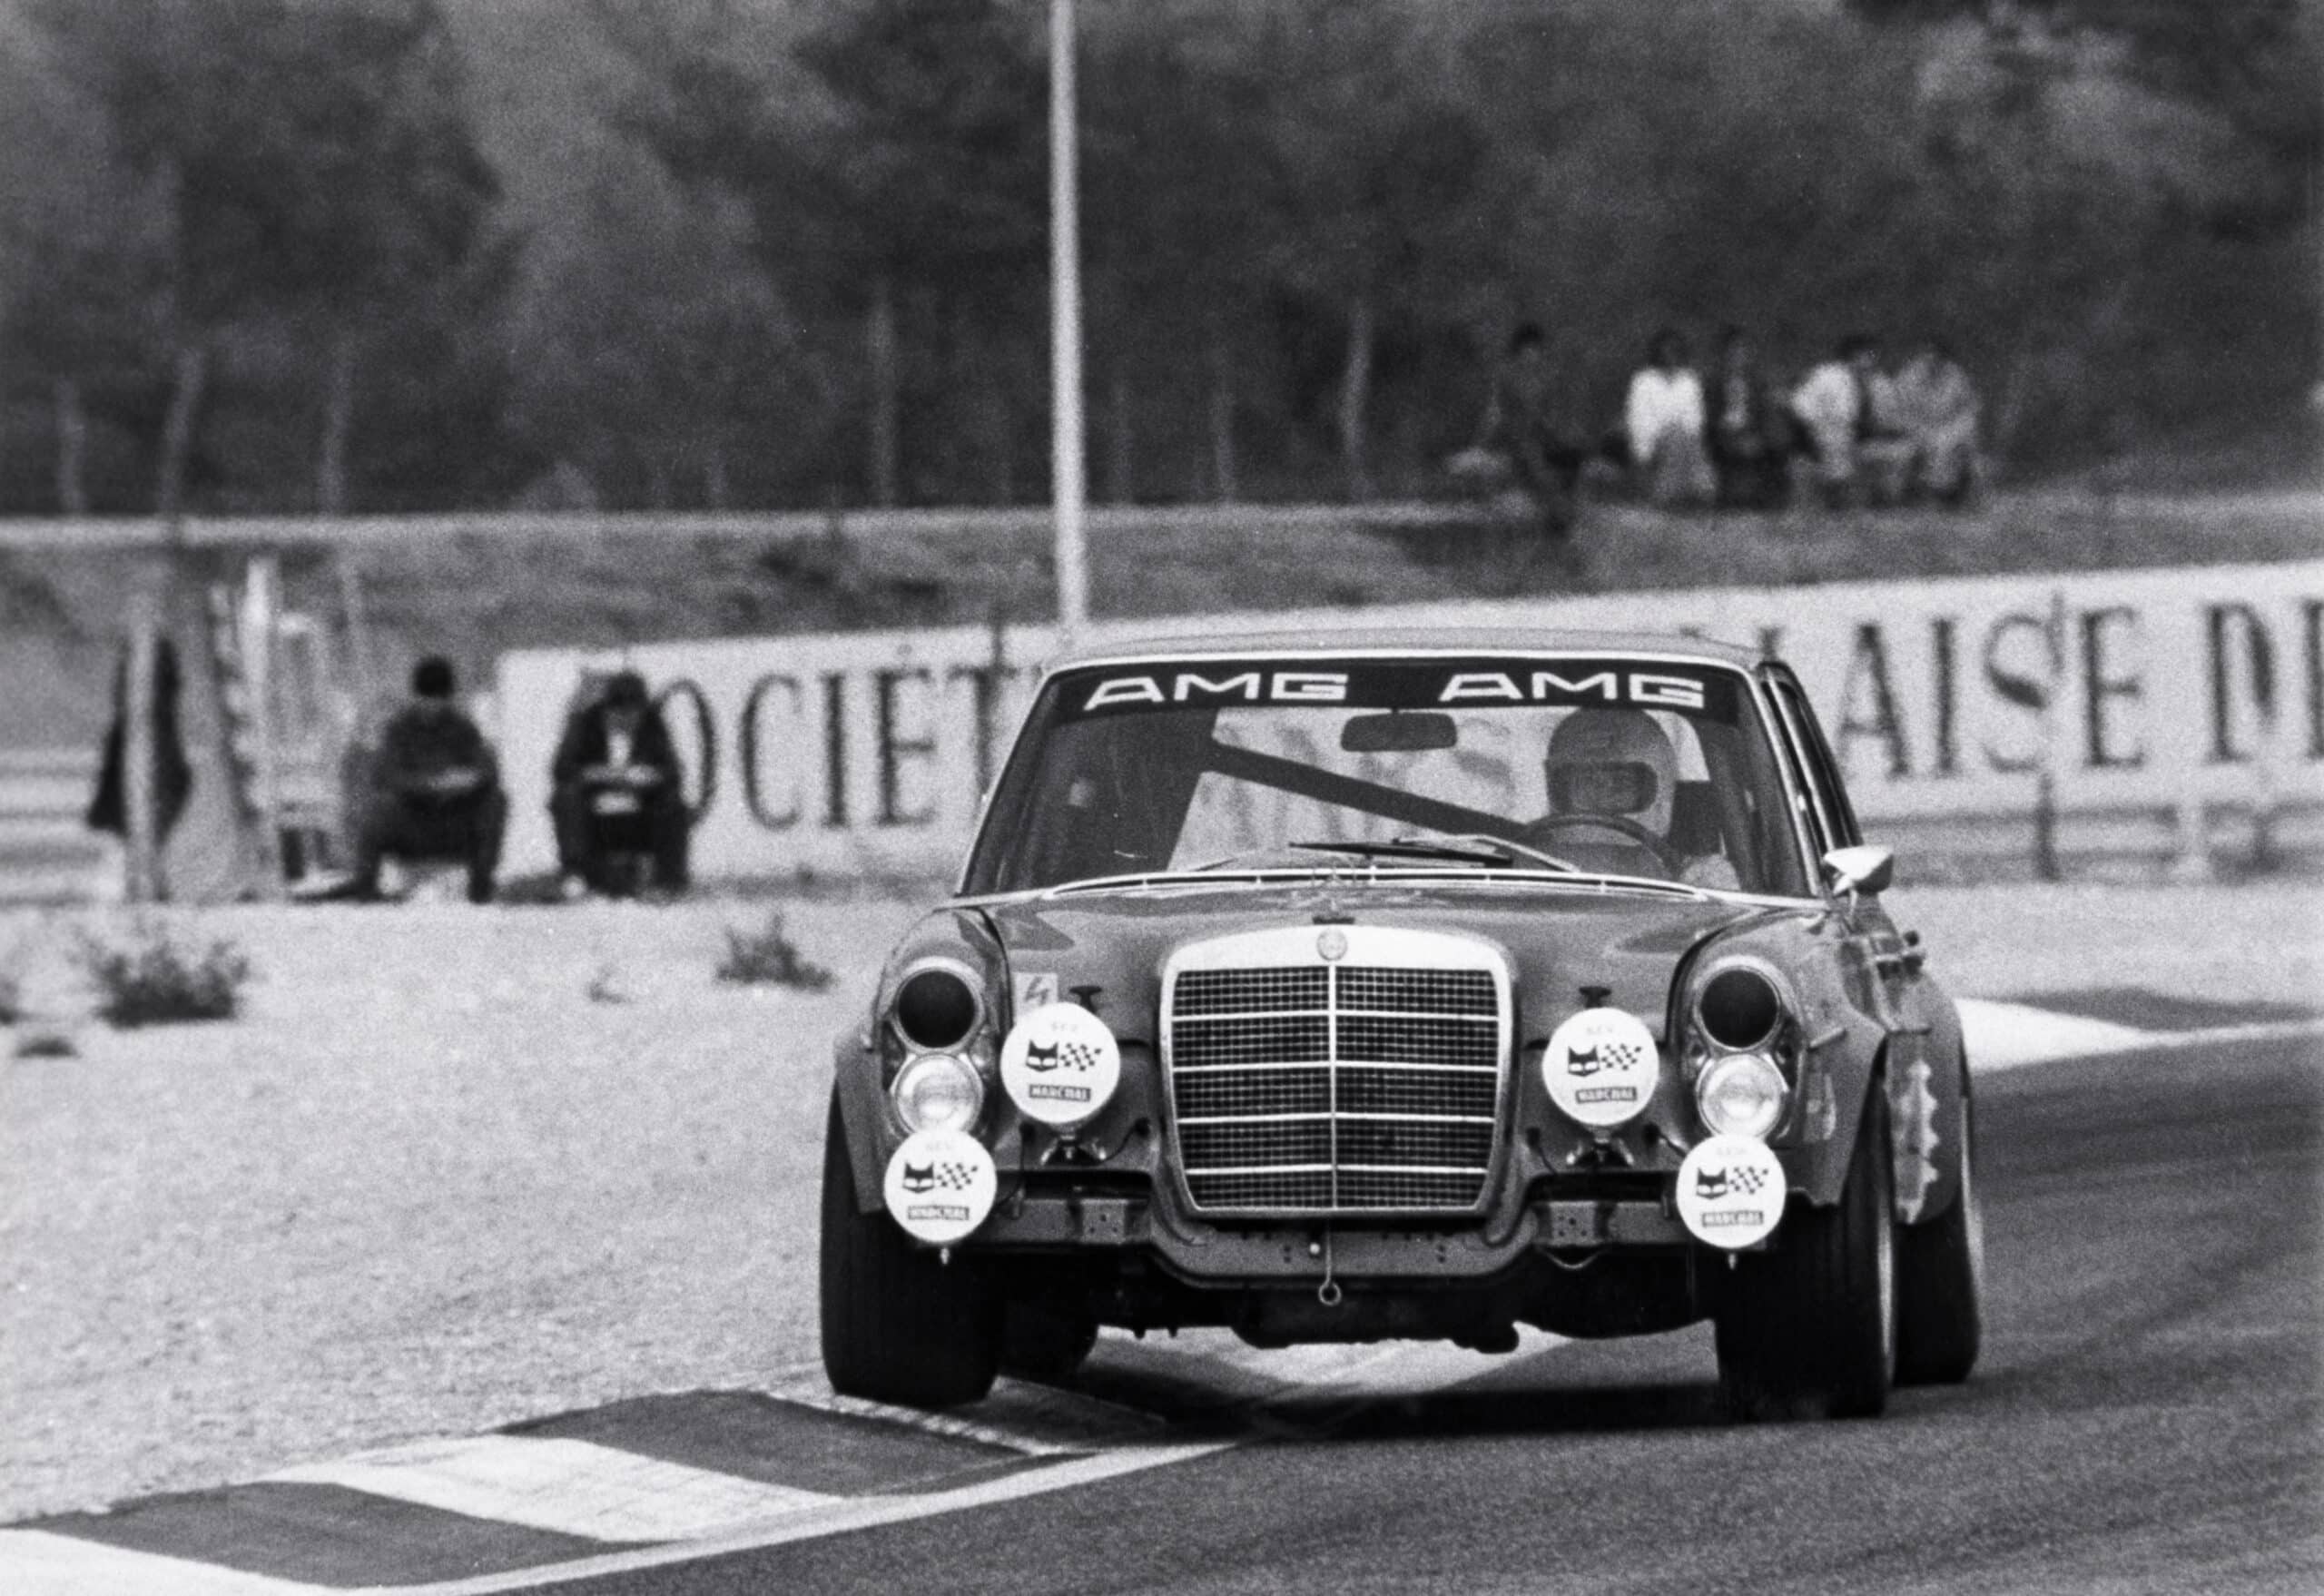 Mercedes-Benz Red Pig segundo lugar en 1971